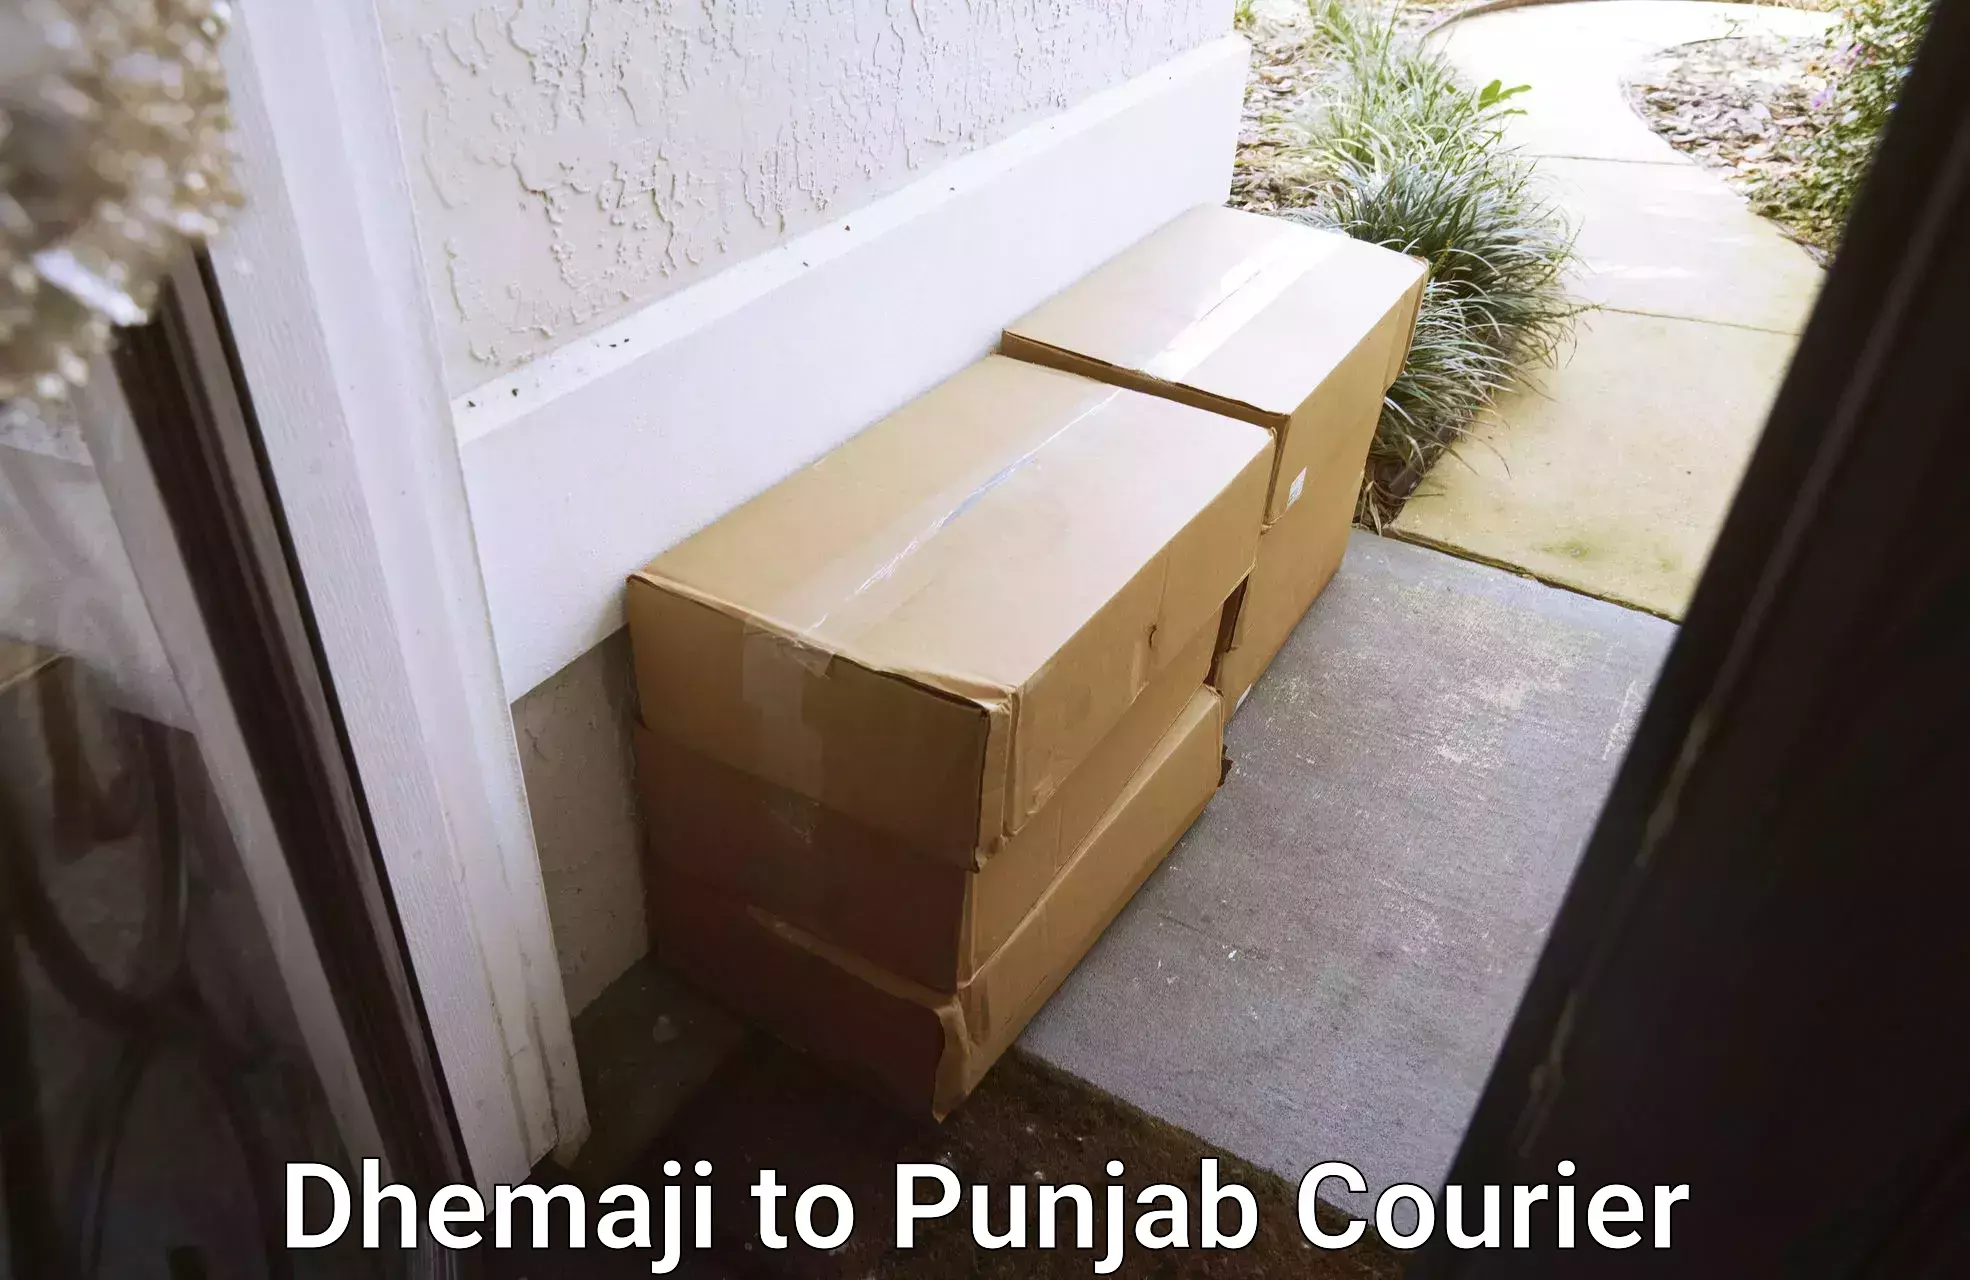 International parcel service Dhemaji to Muktsar